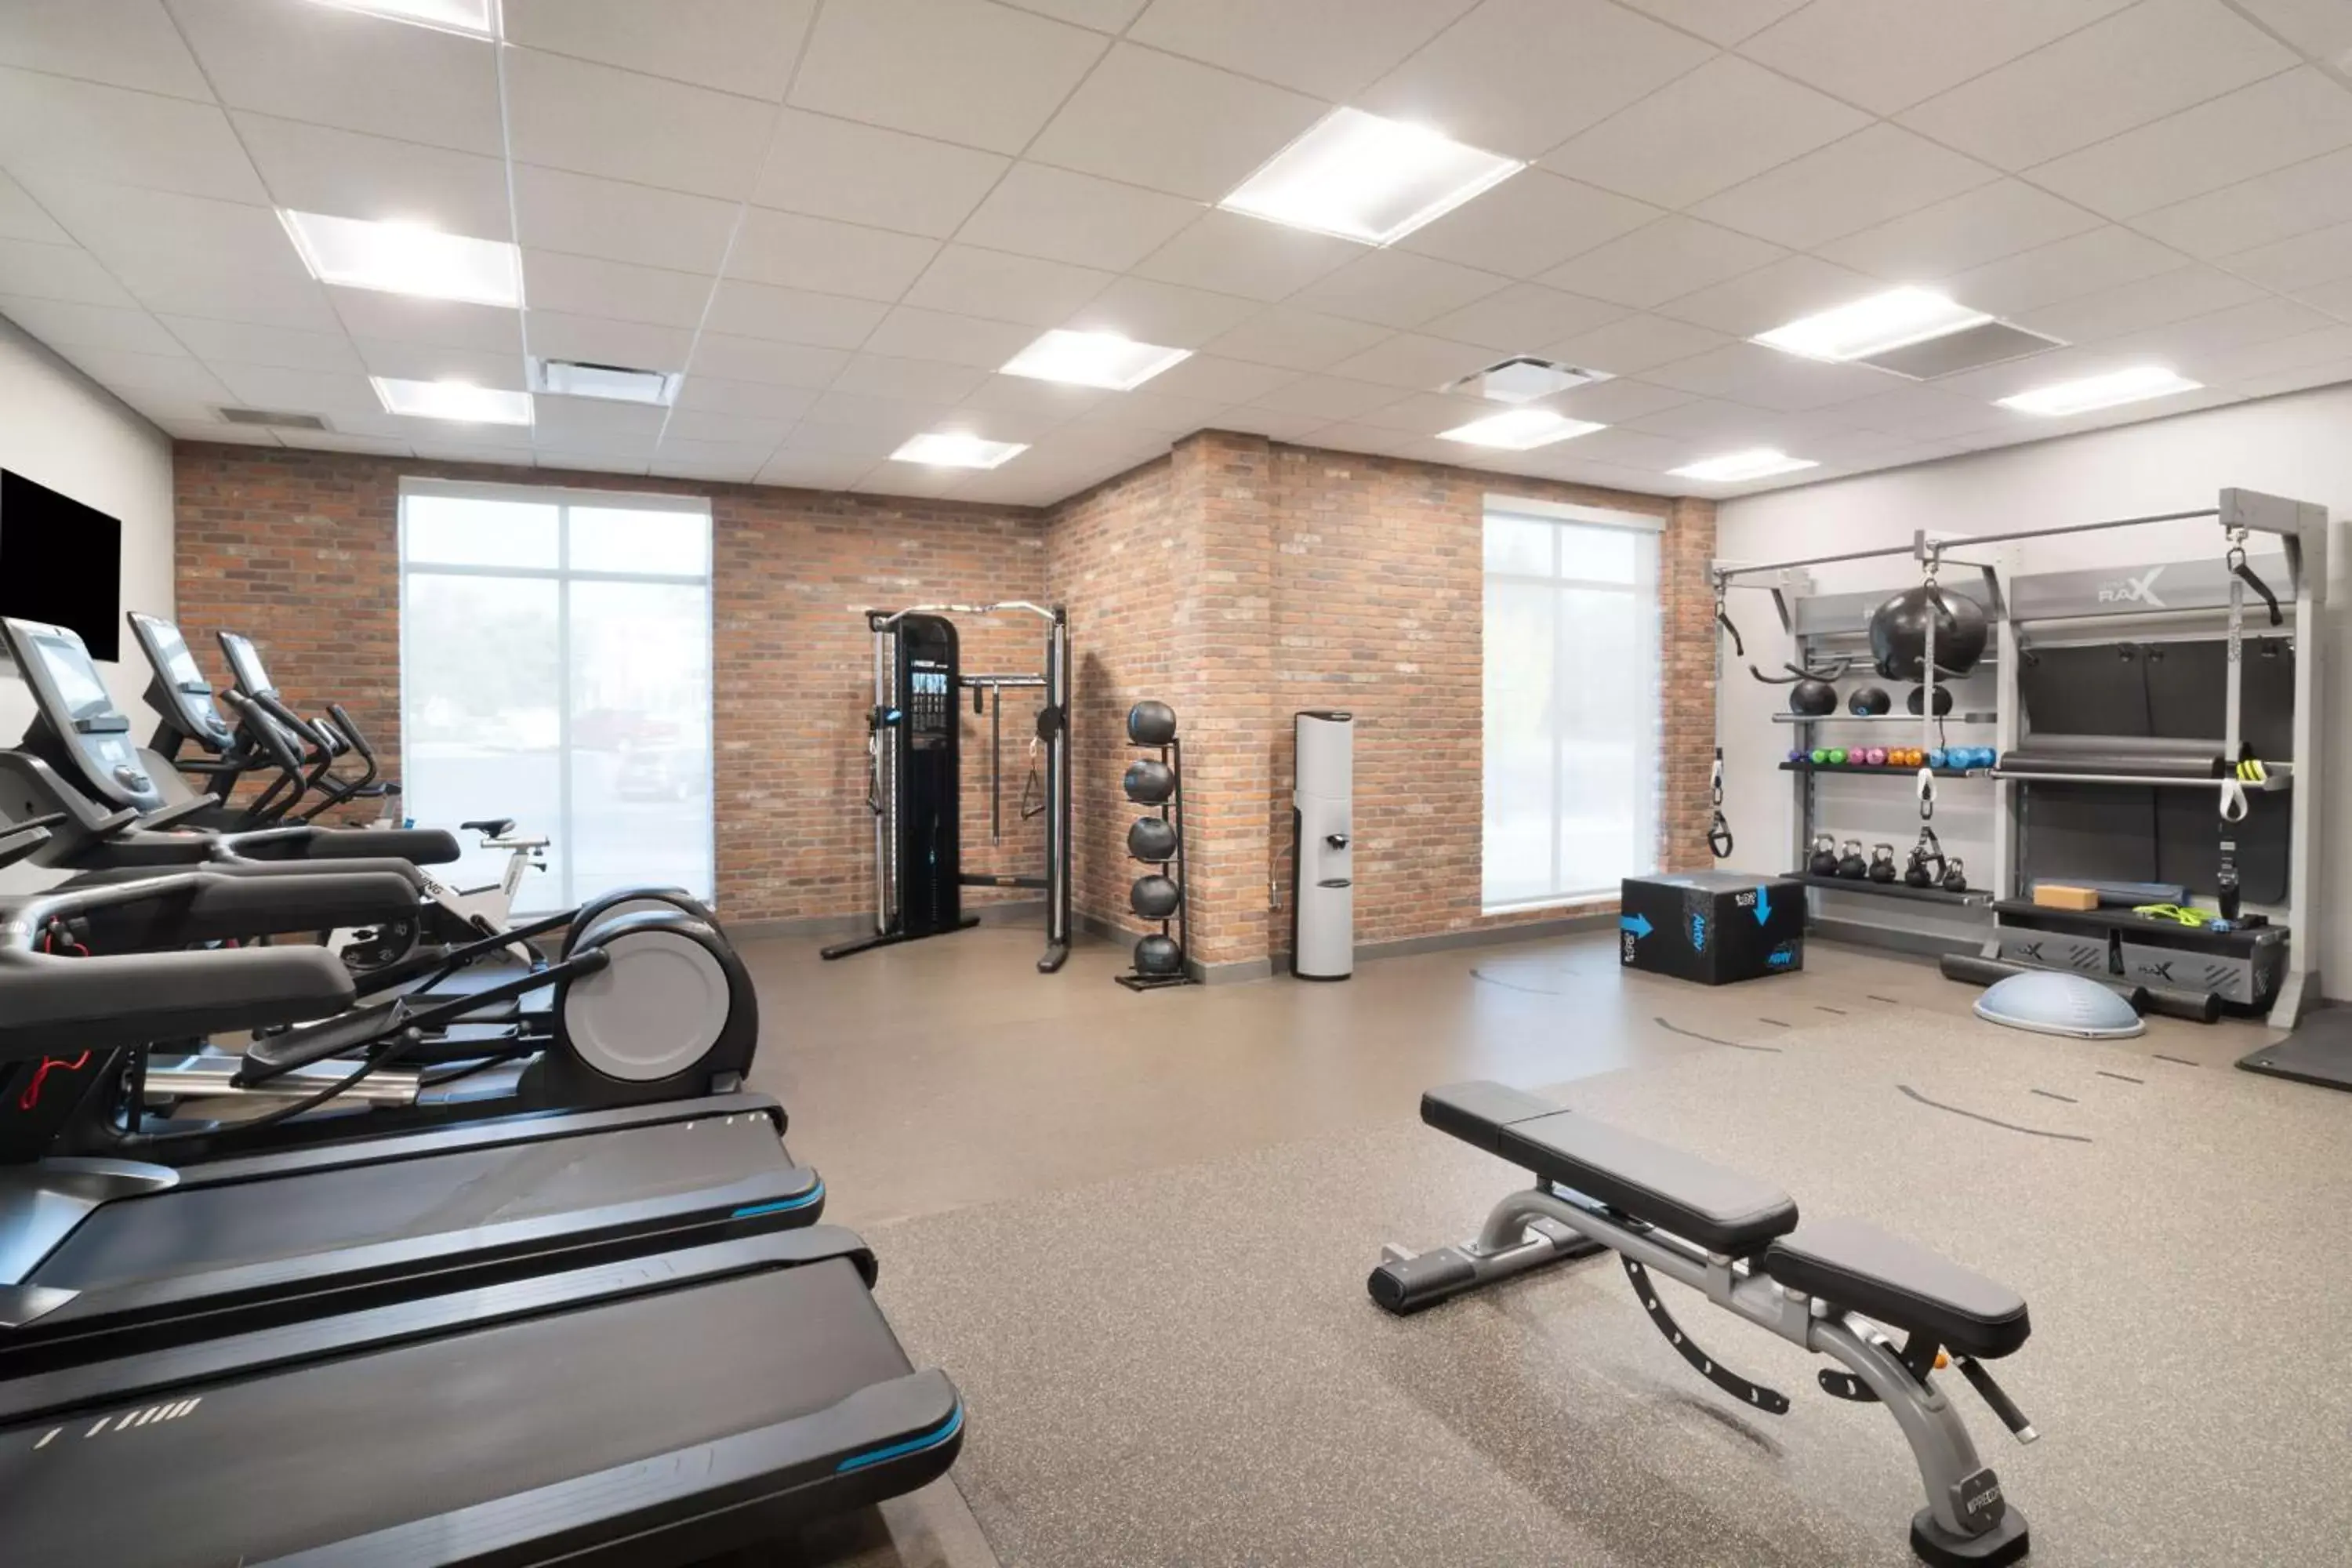 Fitness centre/facilities, Fitness Center/Facilities in Hampton Inn Greer Greenville, Sc